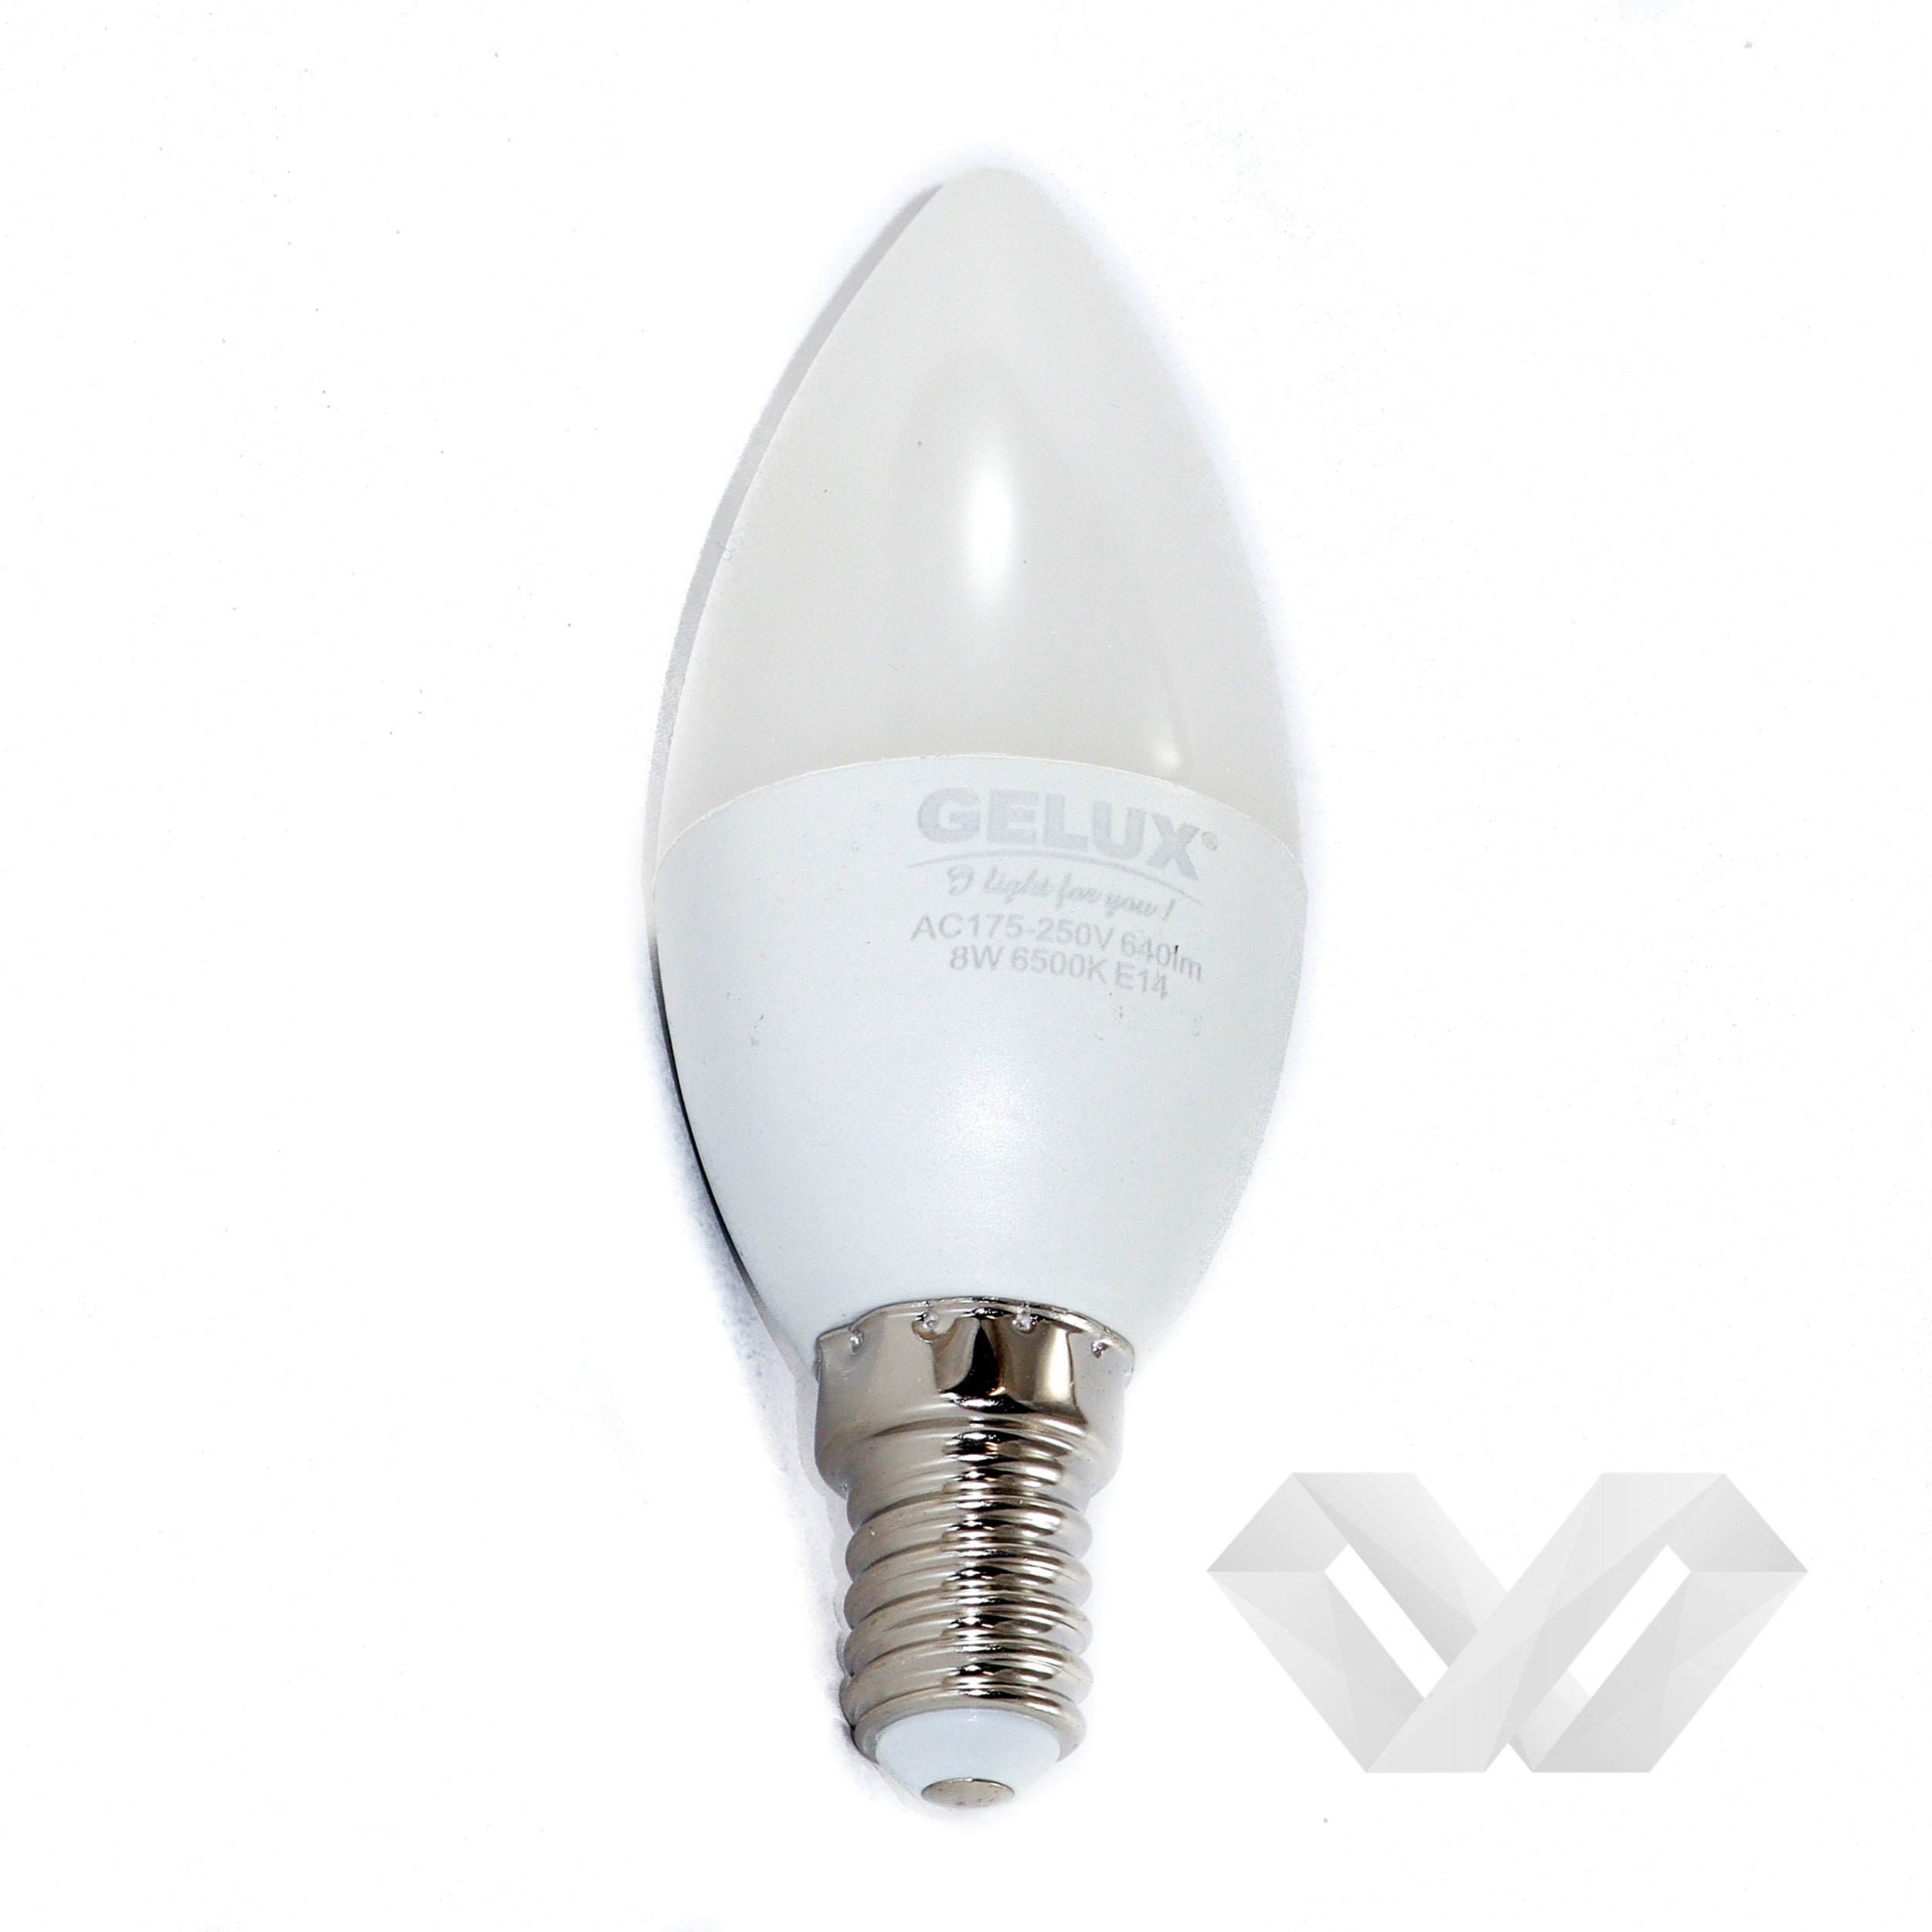 Bec LED Lumanare 5W E27 ECOLED, echivalent 40W lumina calda, Gelux